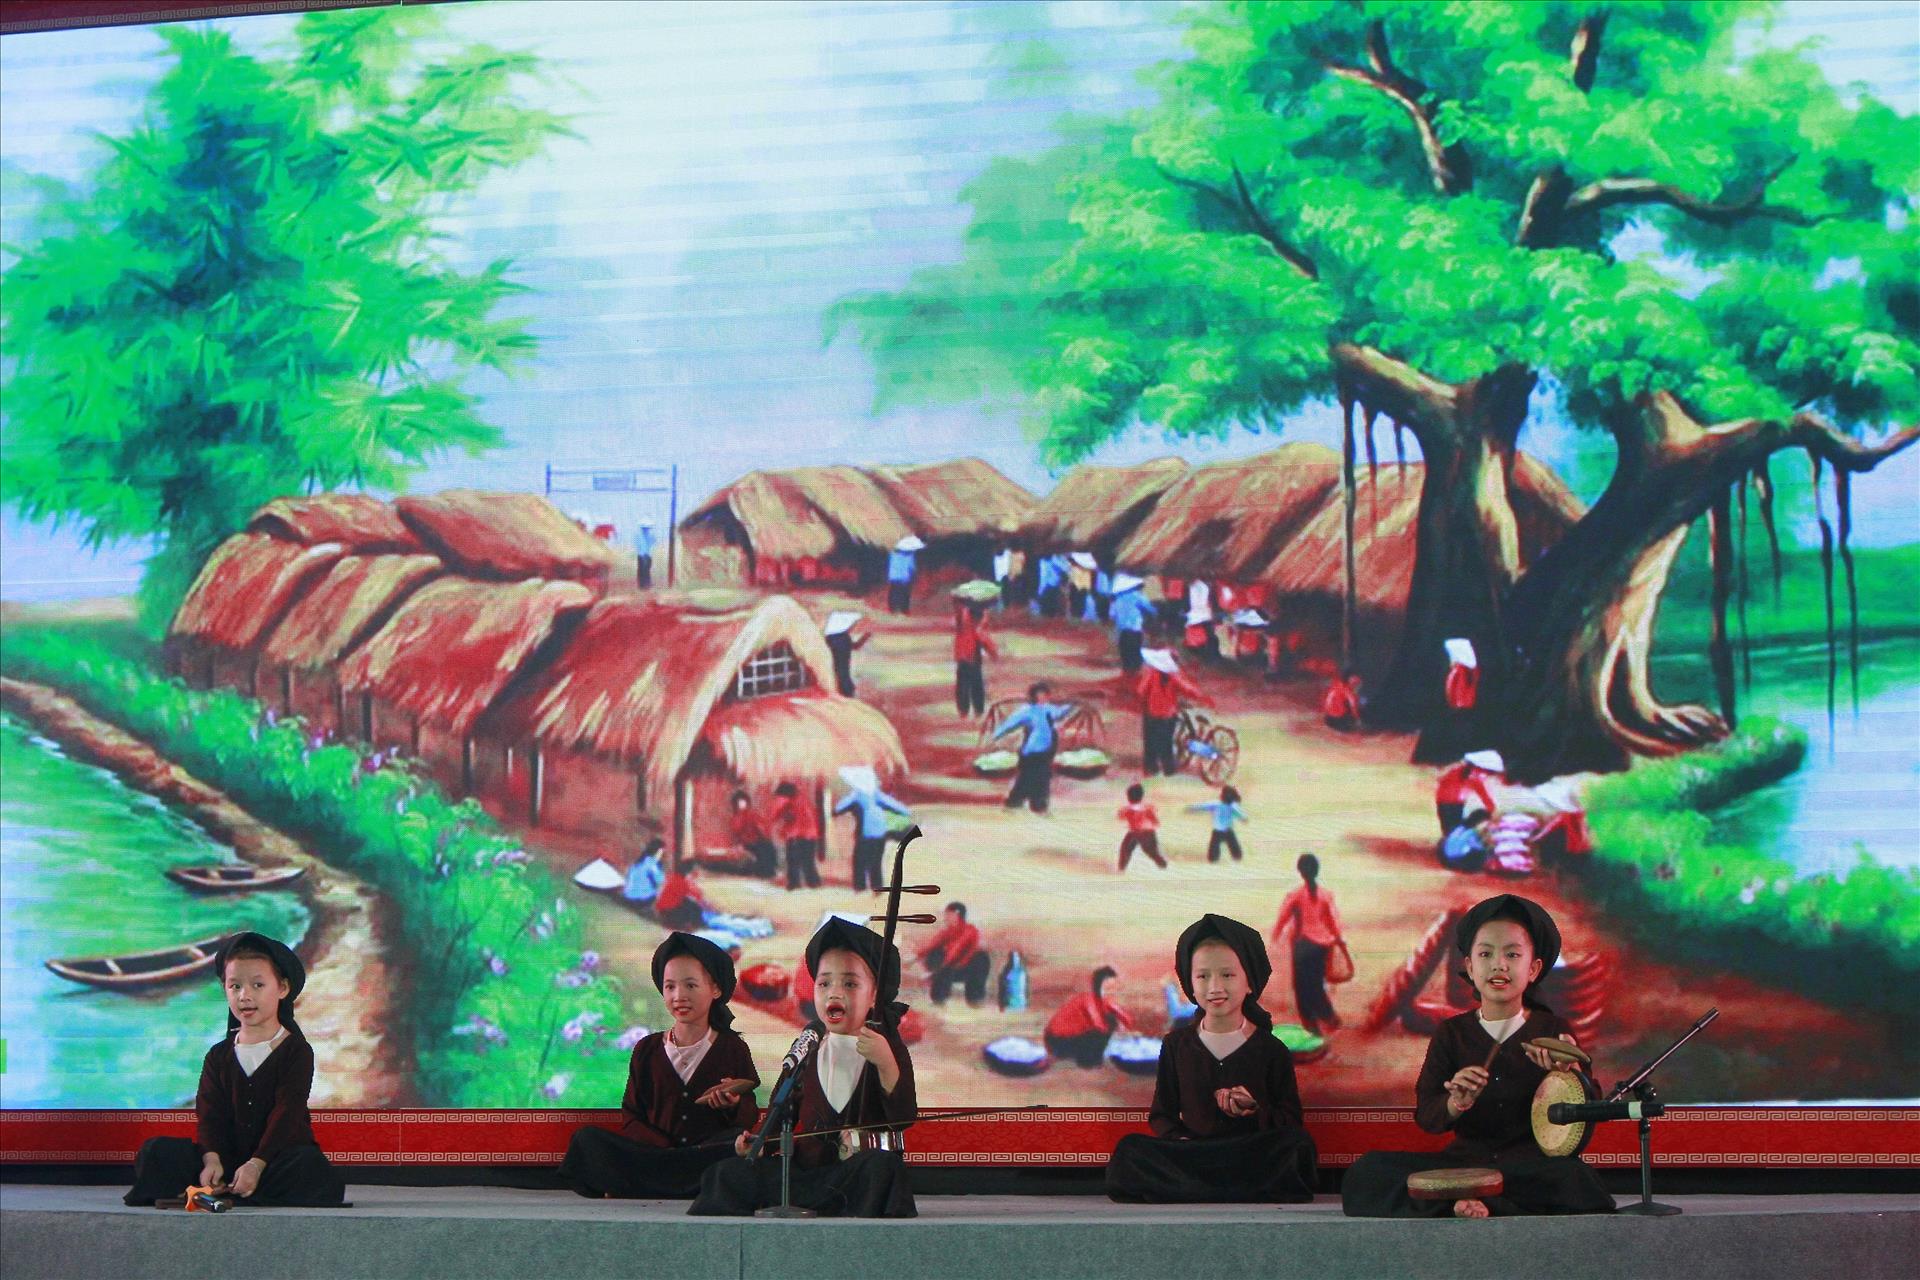 Hát Xẩm Ninh Bình: Hình ảnh này sẽ khiến bạn say mê âm nhạc truyền thống Việt Nam. Đặc biệt, đây là vùng đất Ninh Bình, nơi có nghệ thuật hát xẩm độc đáo, sẽ khiến bạn đắm mình trong không khí trầm lắng, nhẹ nhàng của nền văn hóa Việt Nam.